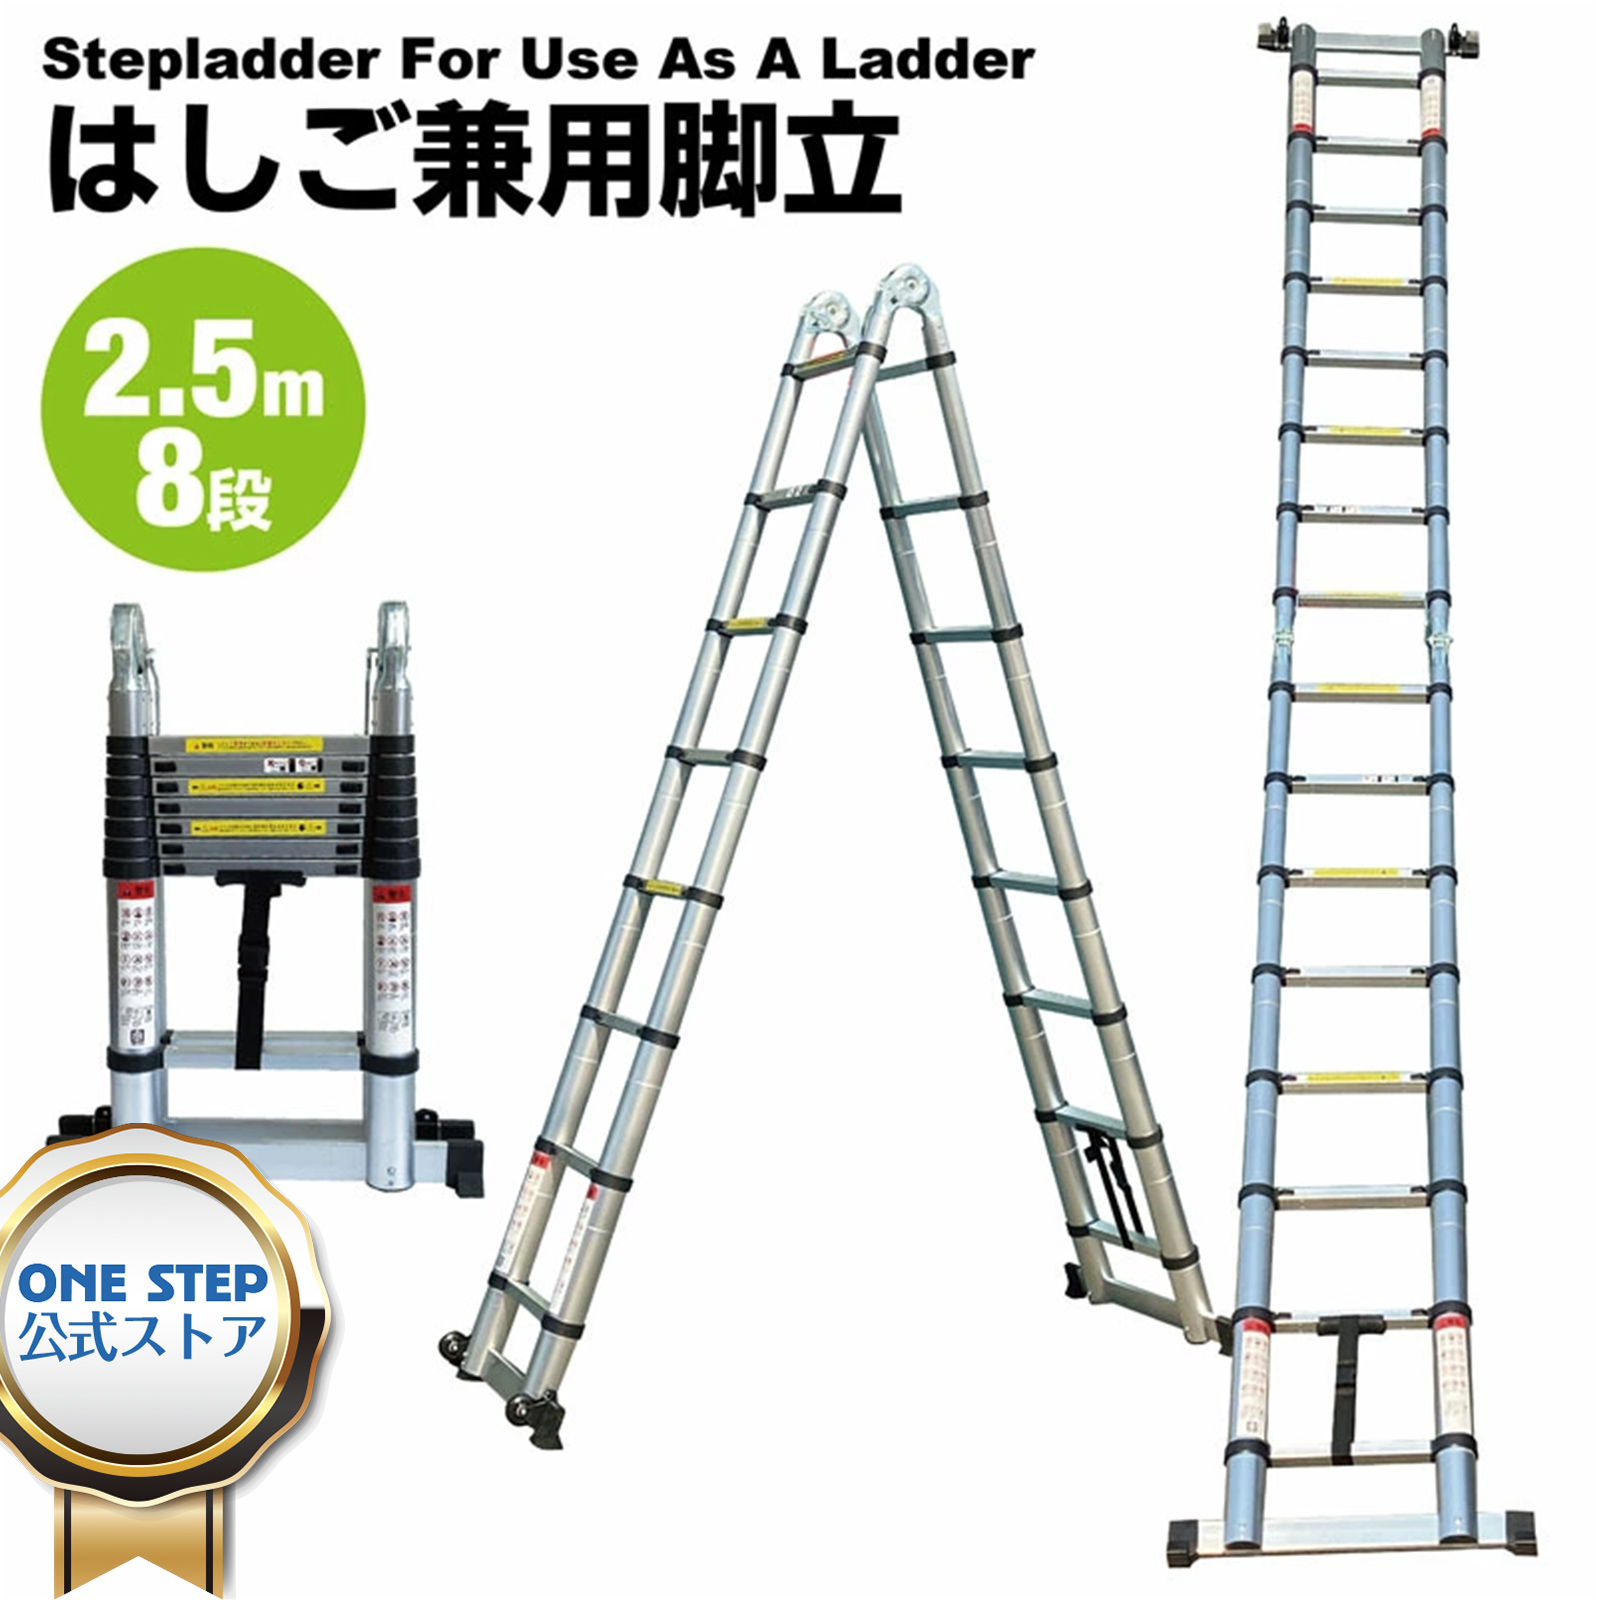 はしご 兼用 脚立 2.5m 8段 ラダー アルミ 2way コンパクト 安全ロック 5m 2.5m 簡単 楽々 使い方いろいろ DIY ガーデニング 工事